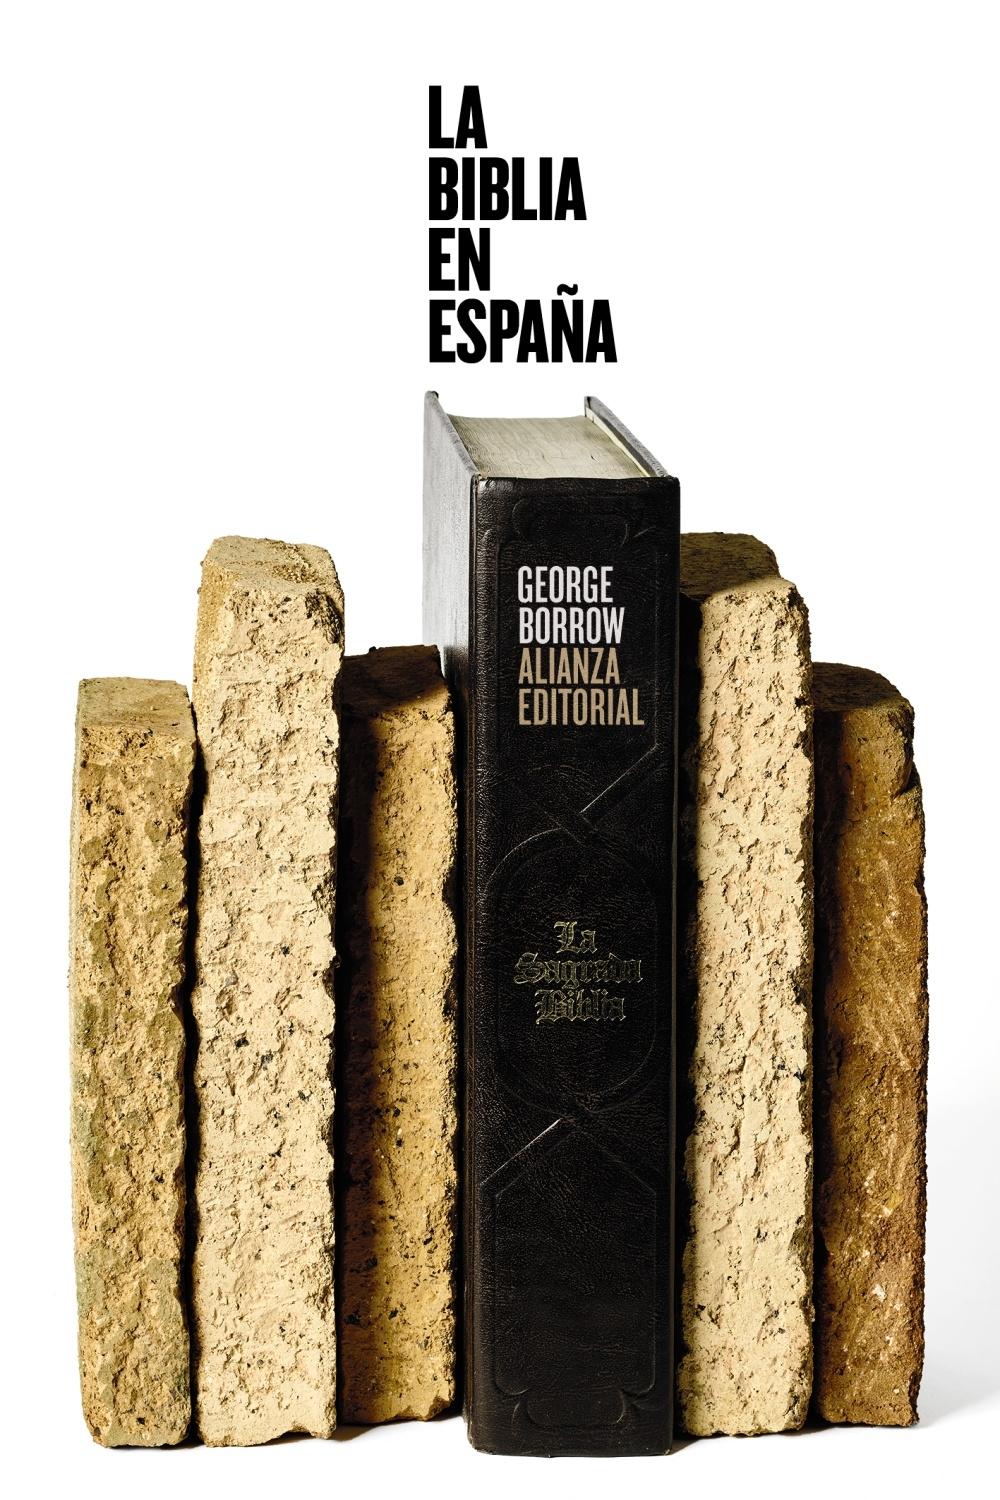 La Biblia en España "Viajes, aventuras y prisiones de un inglés en su intento de difundir las". 